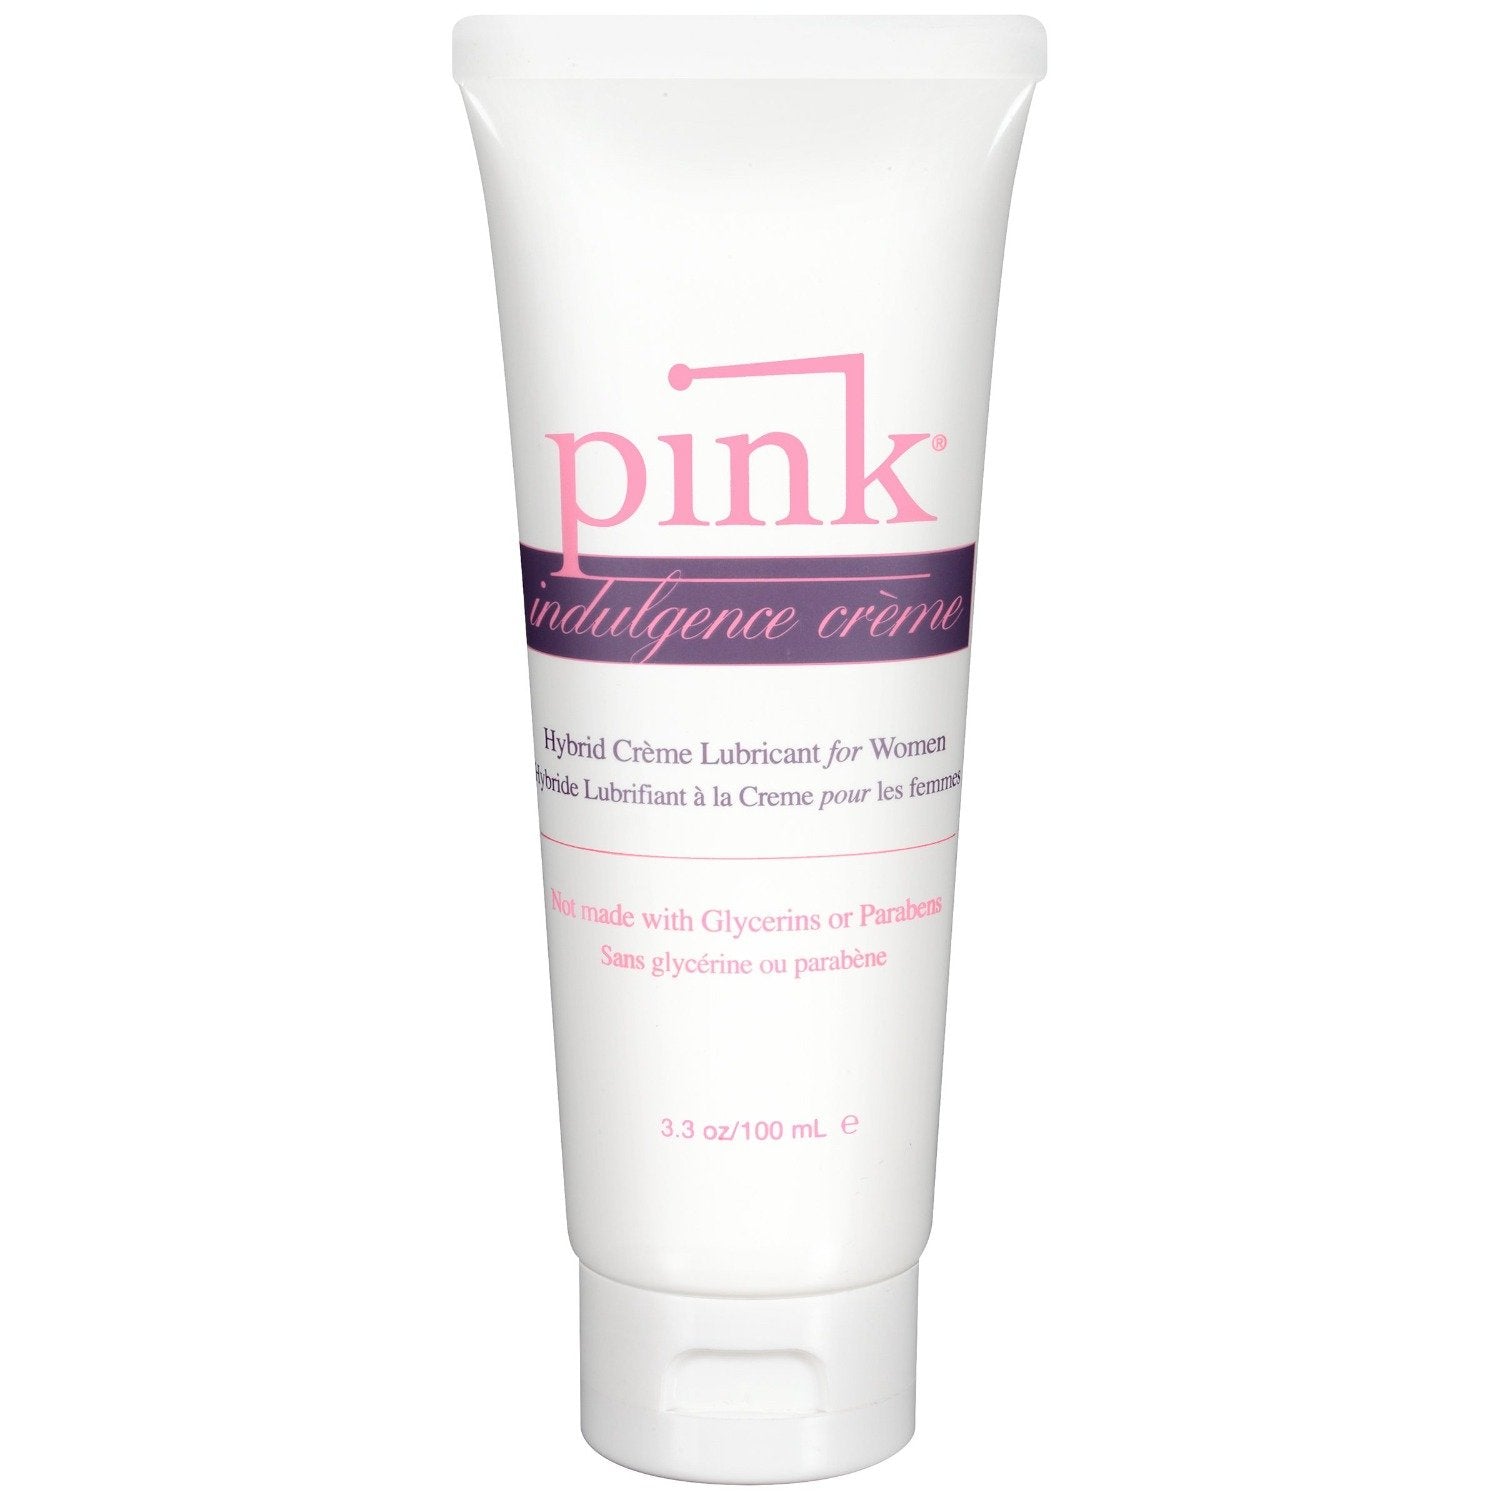 Pink Indulgence Cream 3.3 oz tube